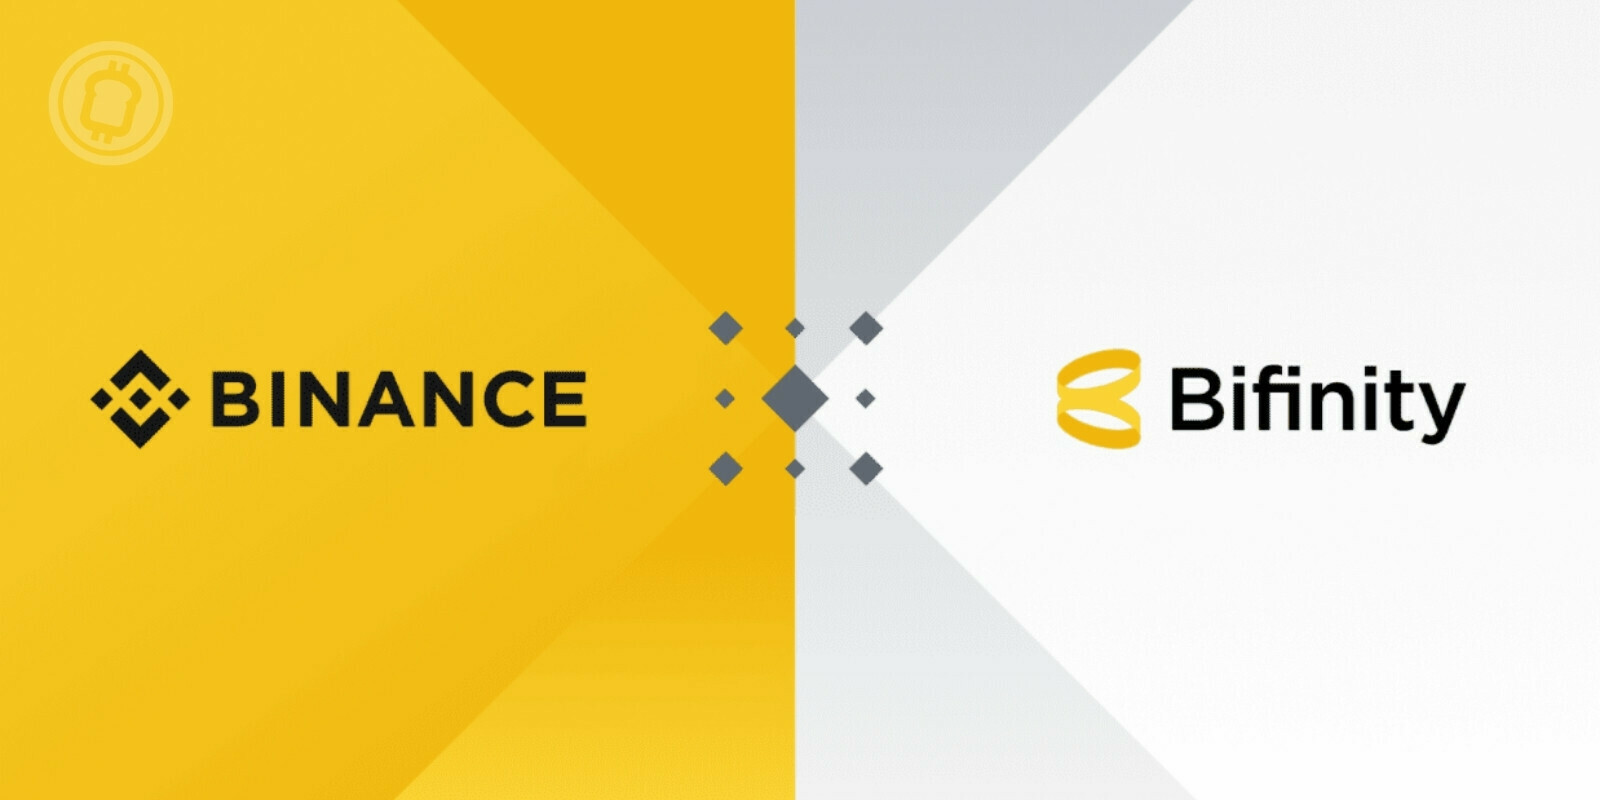 Binance lance Bifinity, un nouveau service de paiements en cryptomonnaies